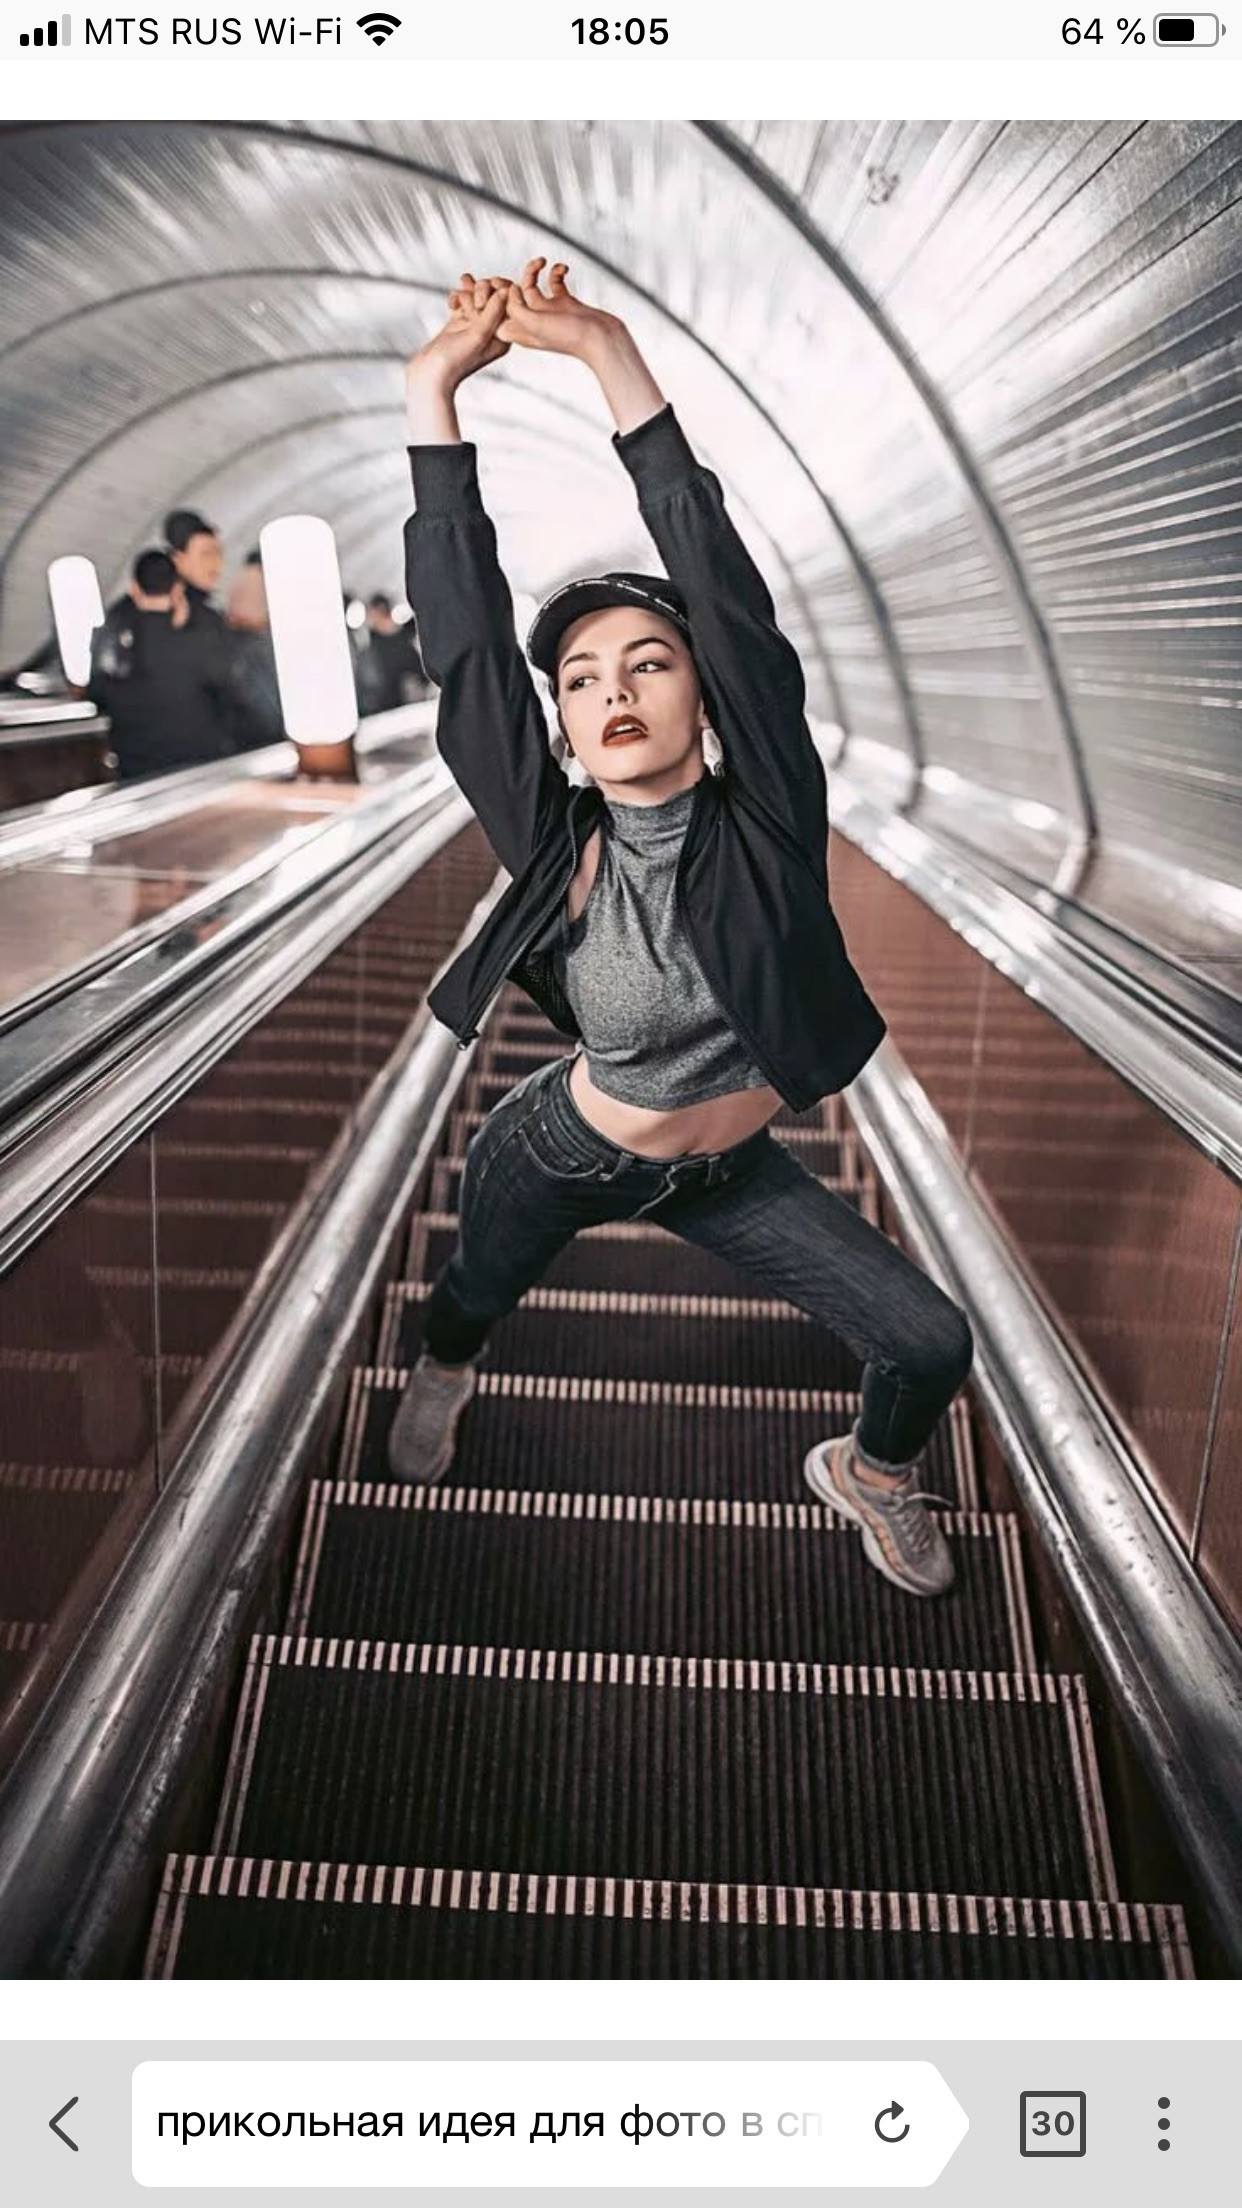 Можно ли фотографировать людей. Патрик Личфилд девушка на эскалаторе. Фотосессия в метро. Интересные фотосессии. Интересные идеи для фотосессии.